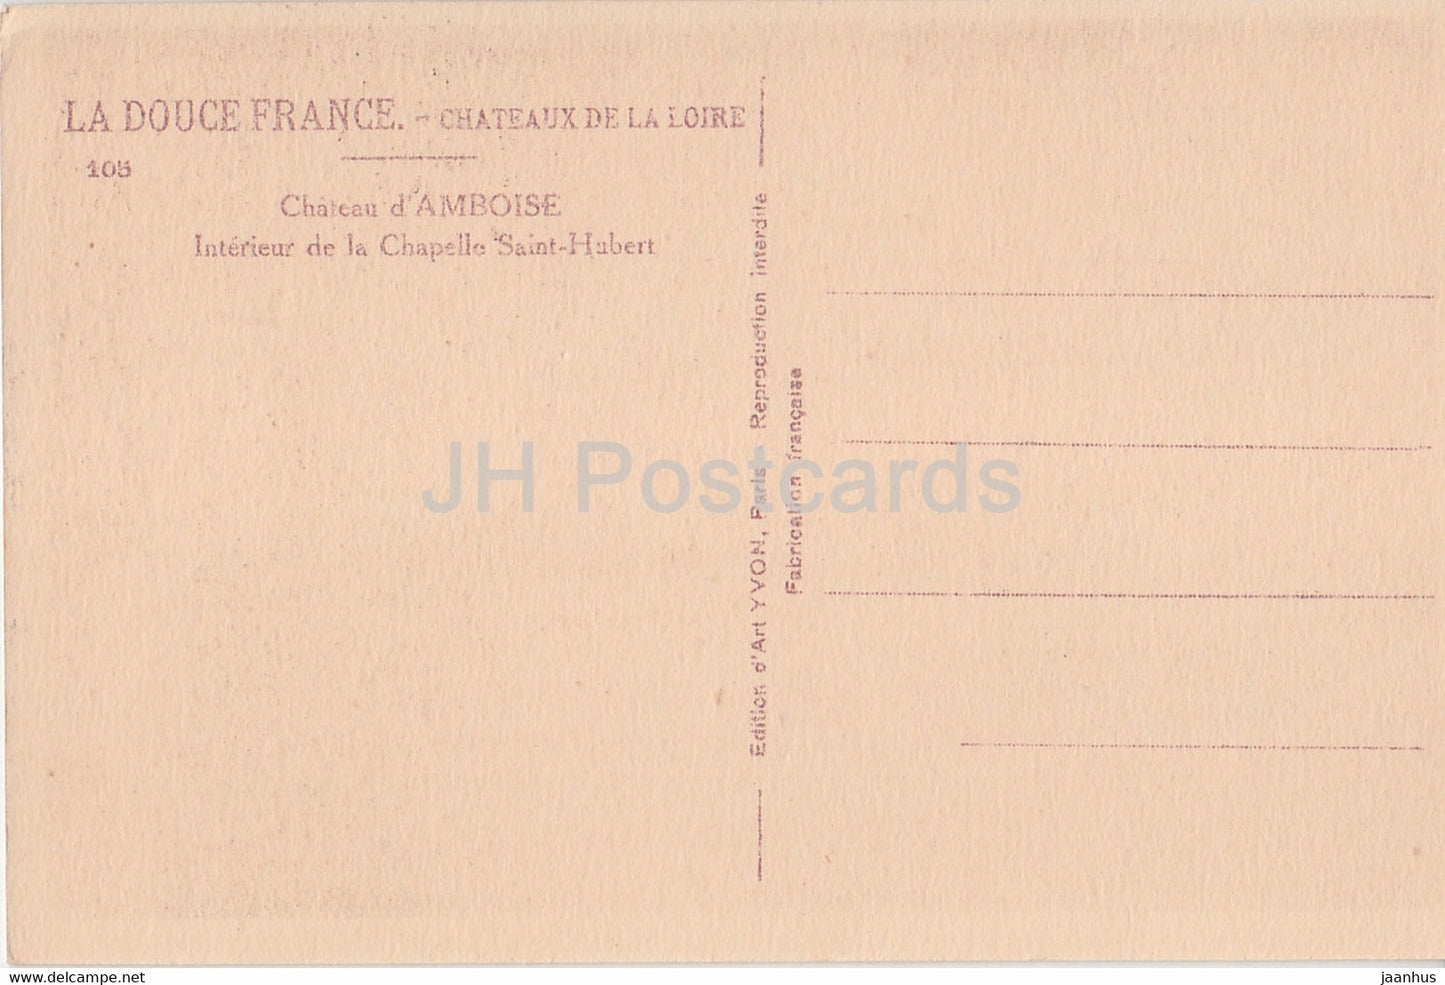 Chateau d'Amboise - Interieur de la Chapelle Saint Hubert - 105 - castle - old postcard - France - unused